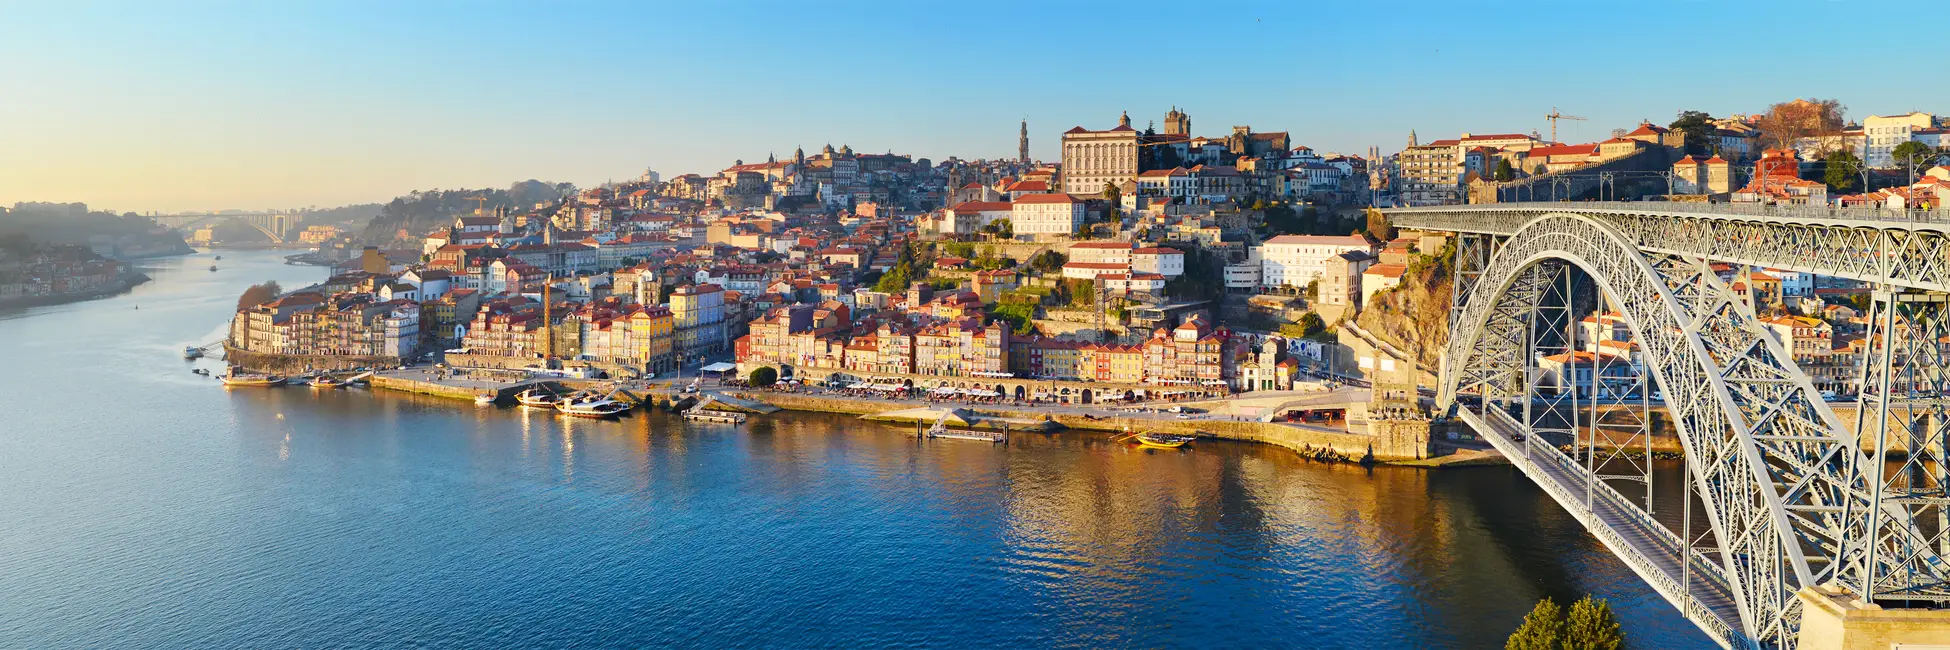 Vue d'ensemble de Porto